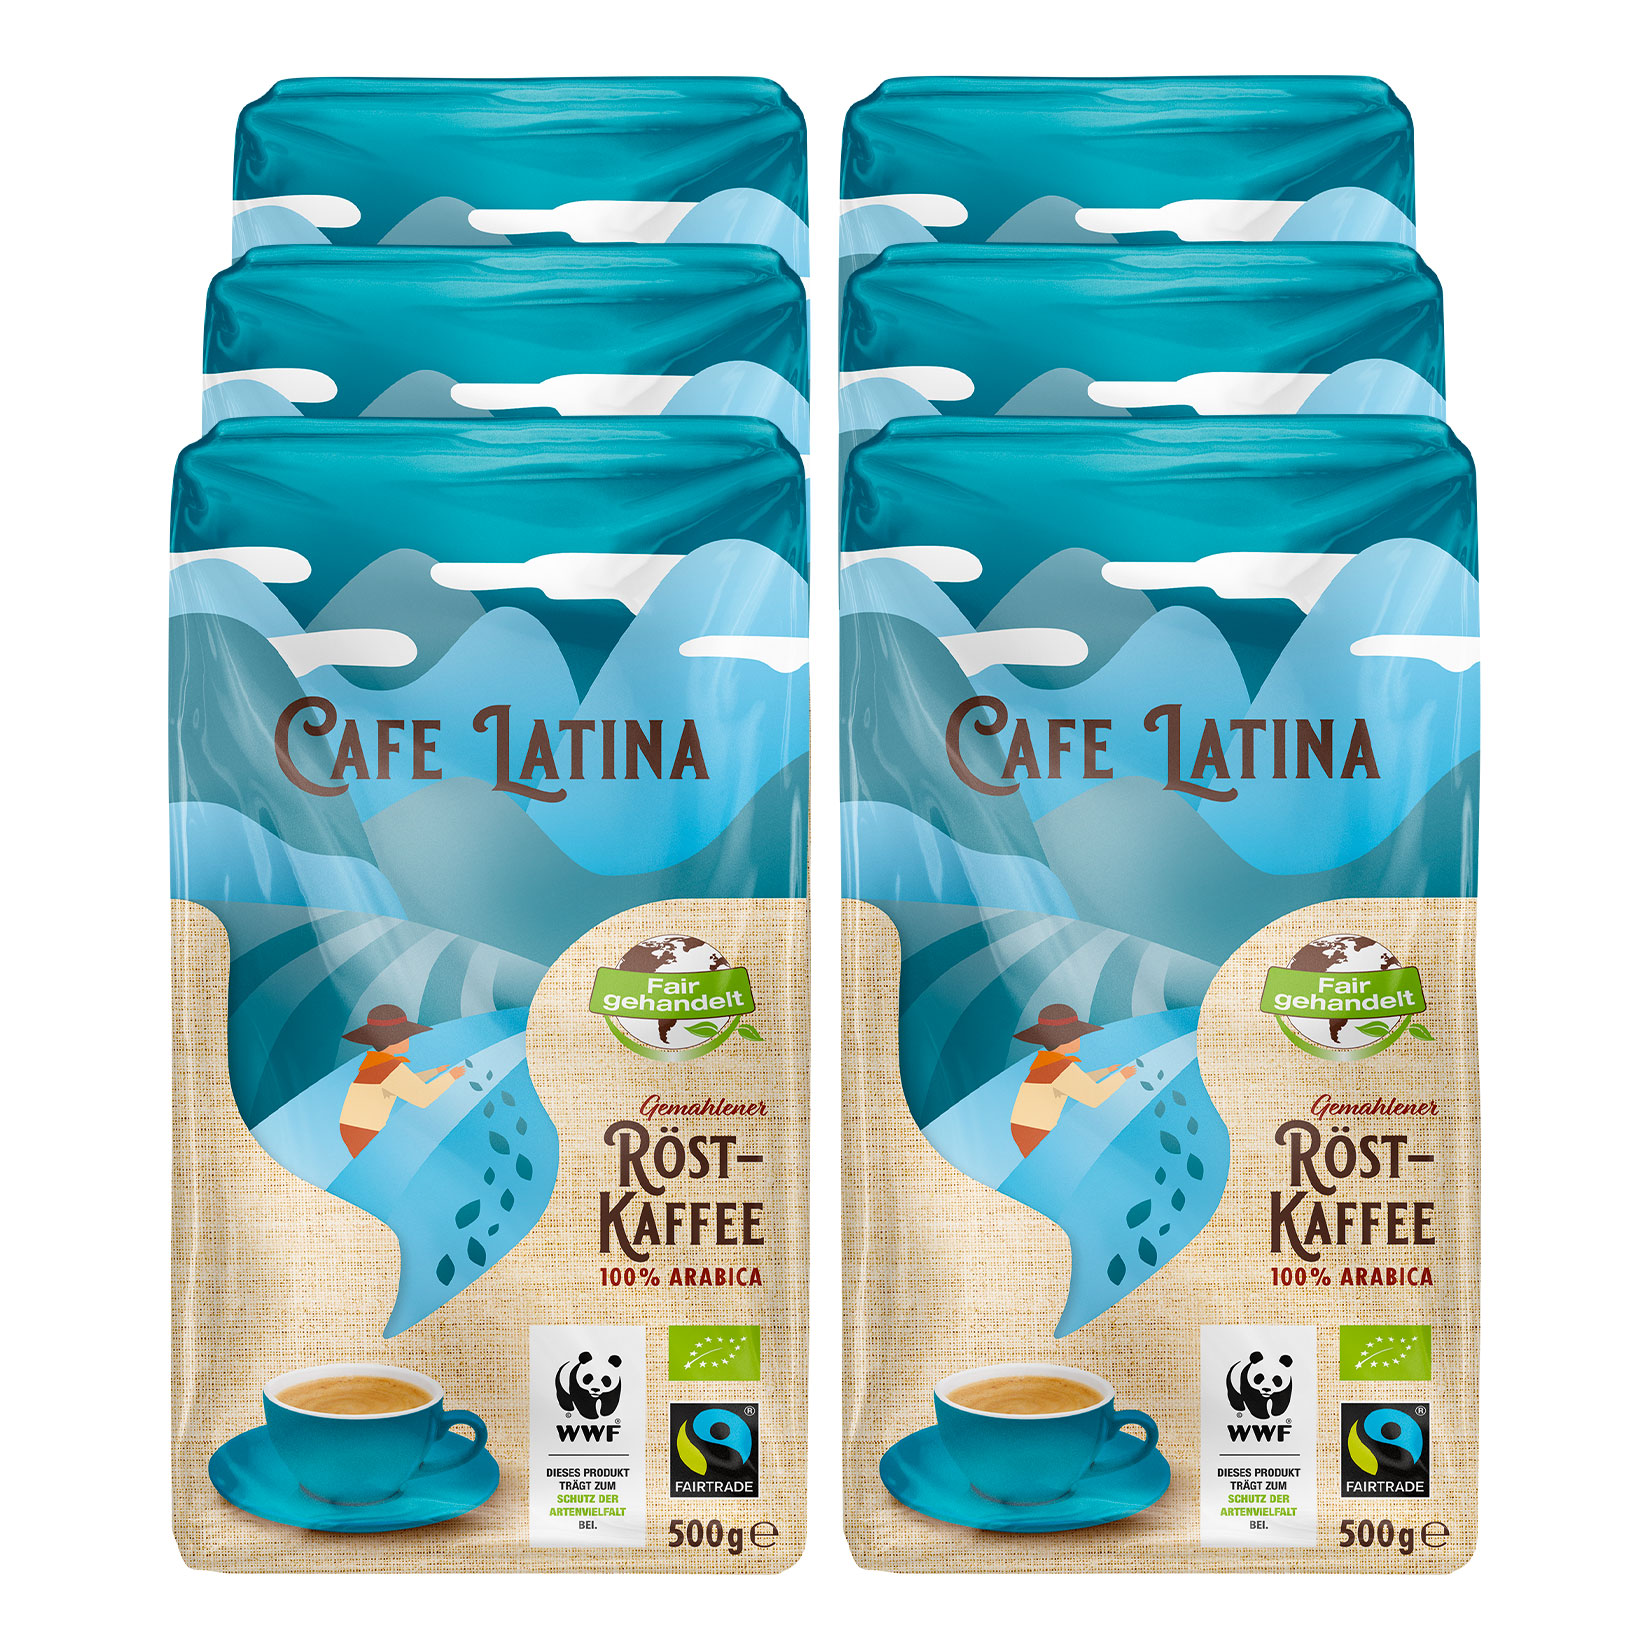 Cafe Latina Fairtrade für Genussmomente | Netto-Online